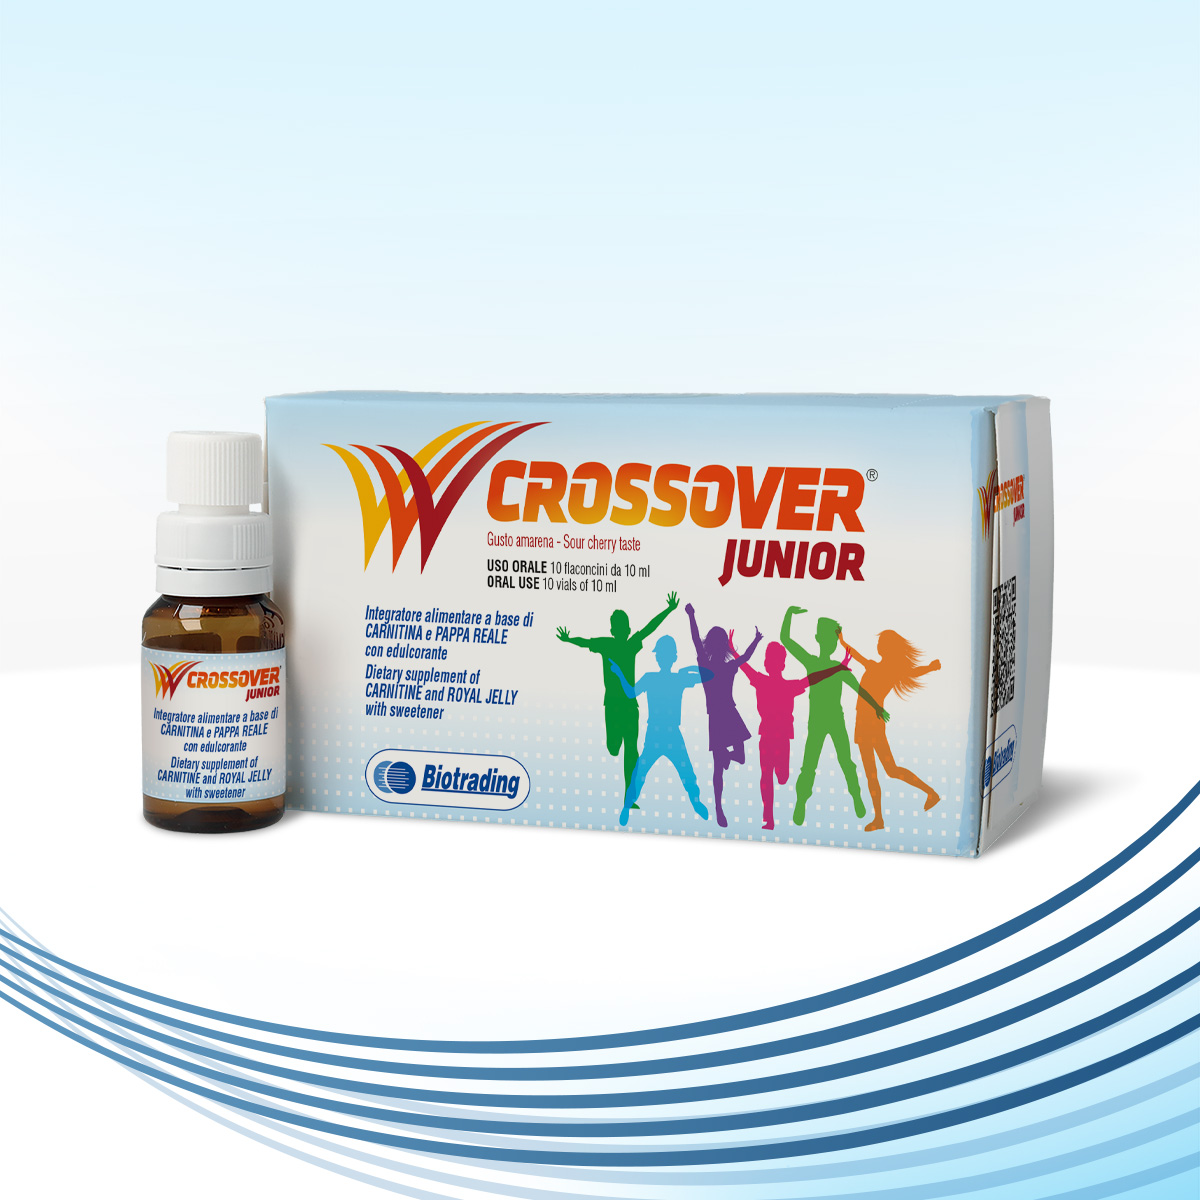 Crossover Junior vials